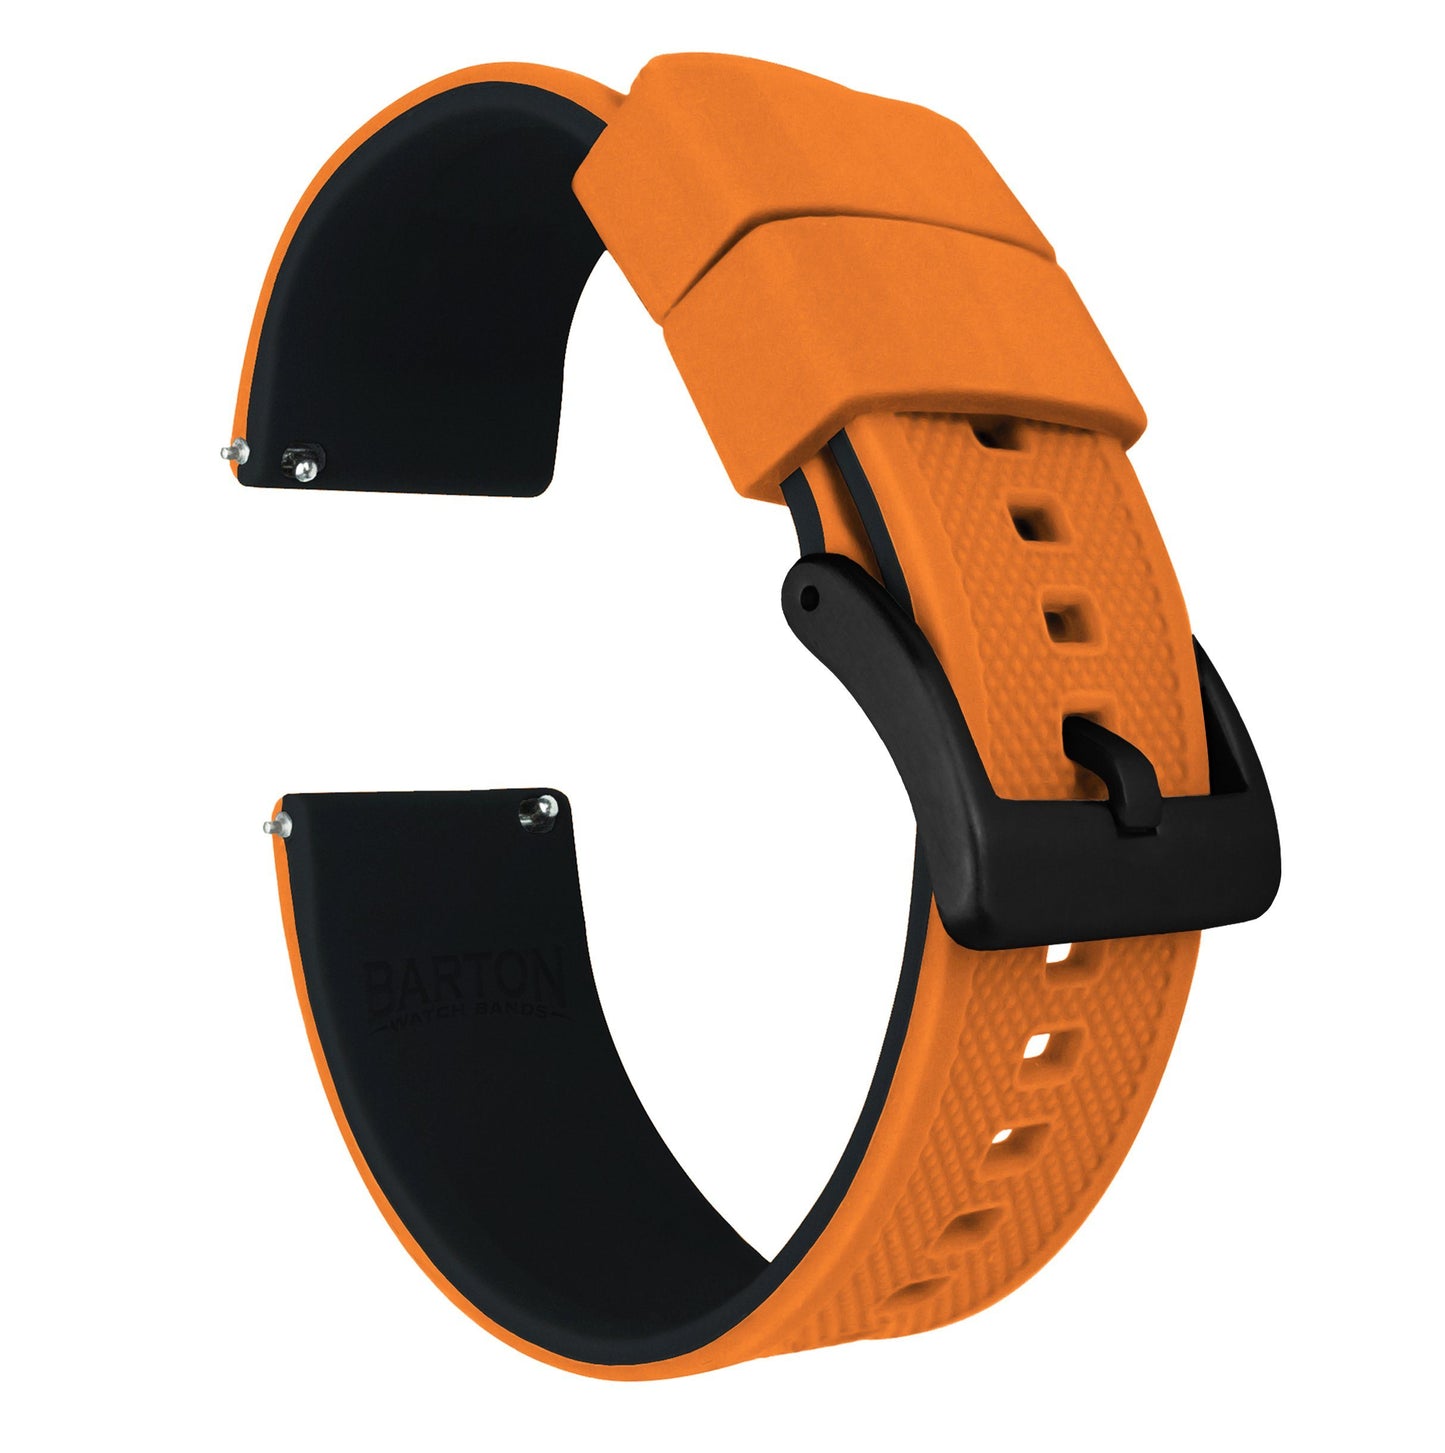 Fossil Gen 5 | Elite Silicone | Pumpkin Orange Top / Black Bottom - Barton Watch Bands